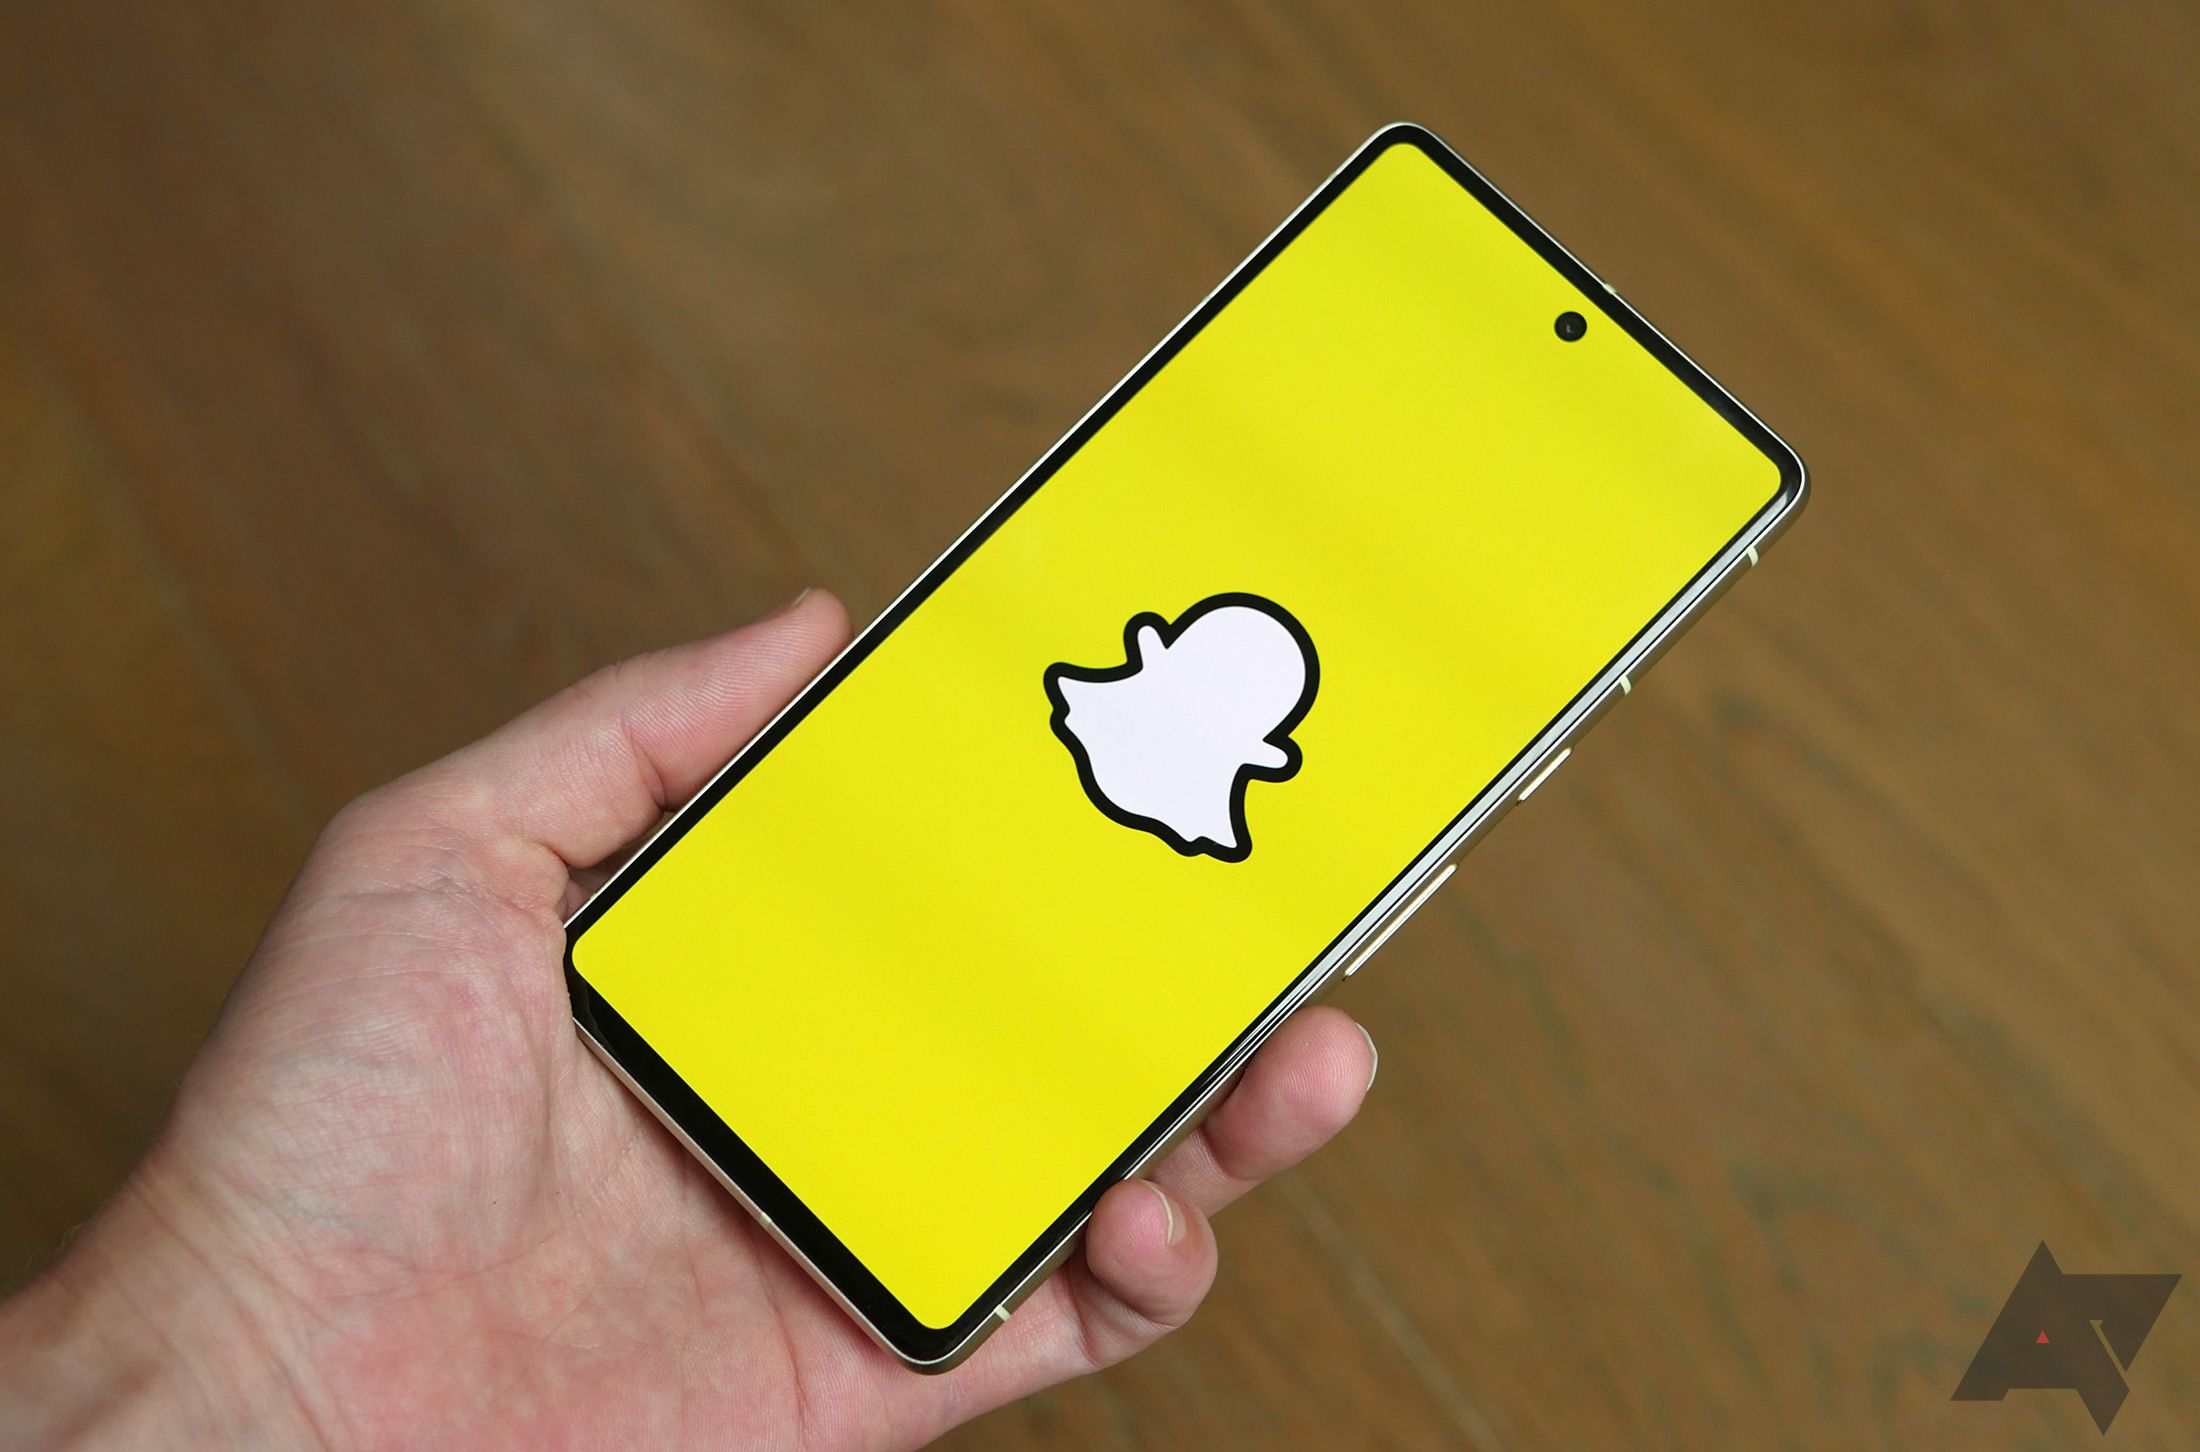 Mão segurando um smartphone com aplicativo Snapchat